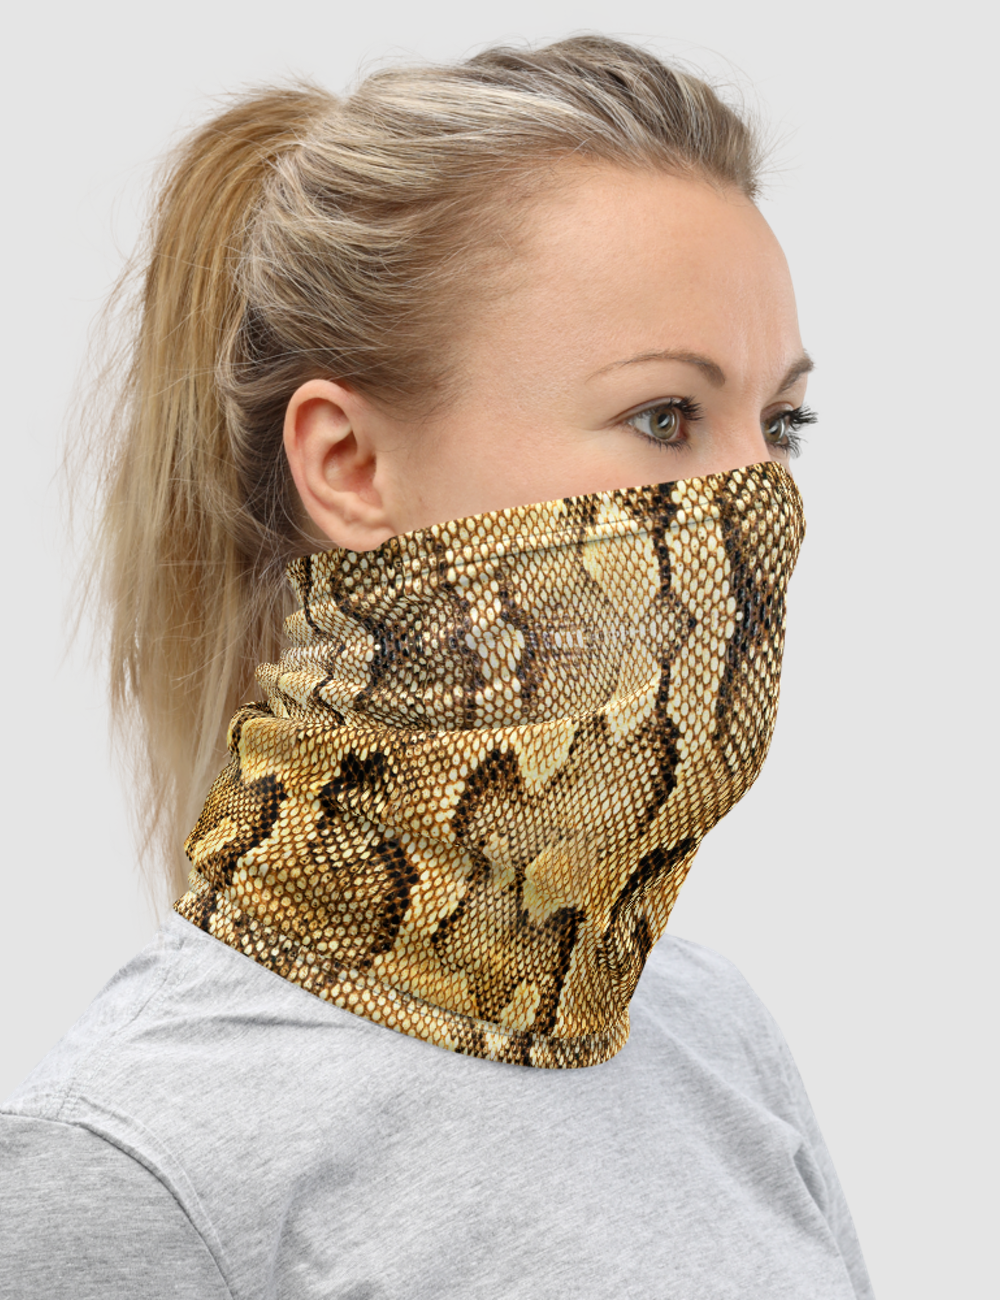 Faux Snake Skin Pattern Print | Neck Gaiter Face Mask OniTakai